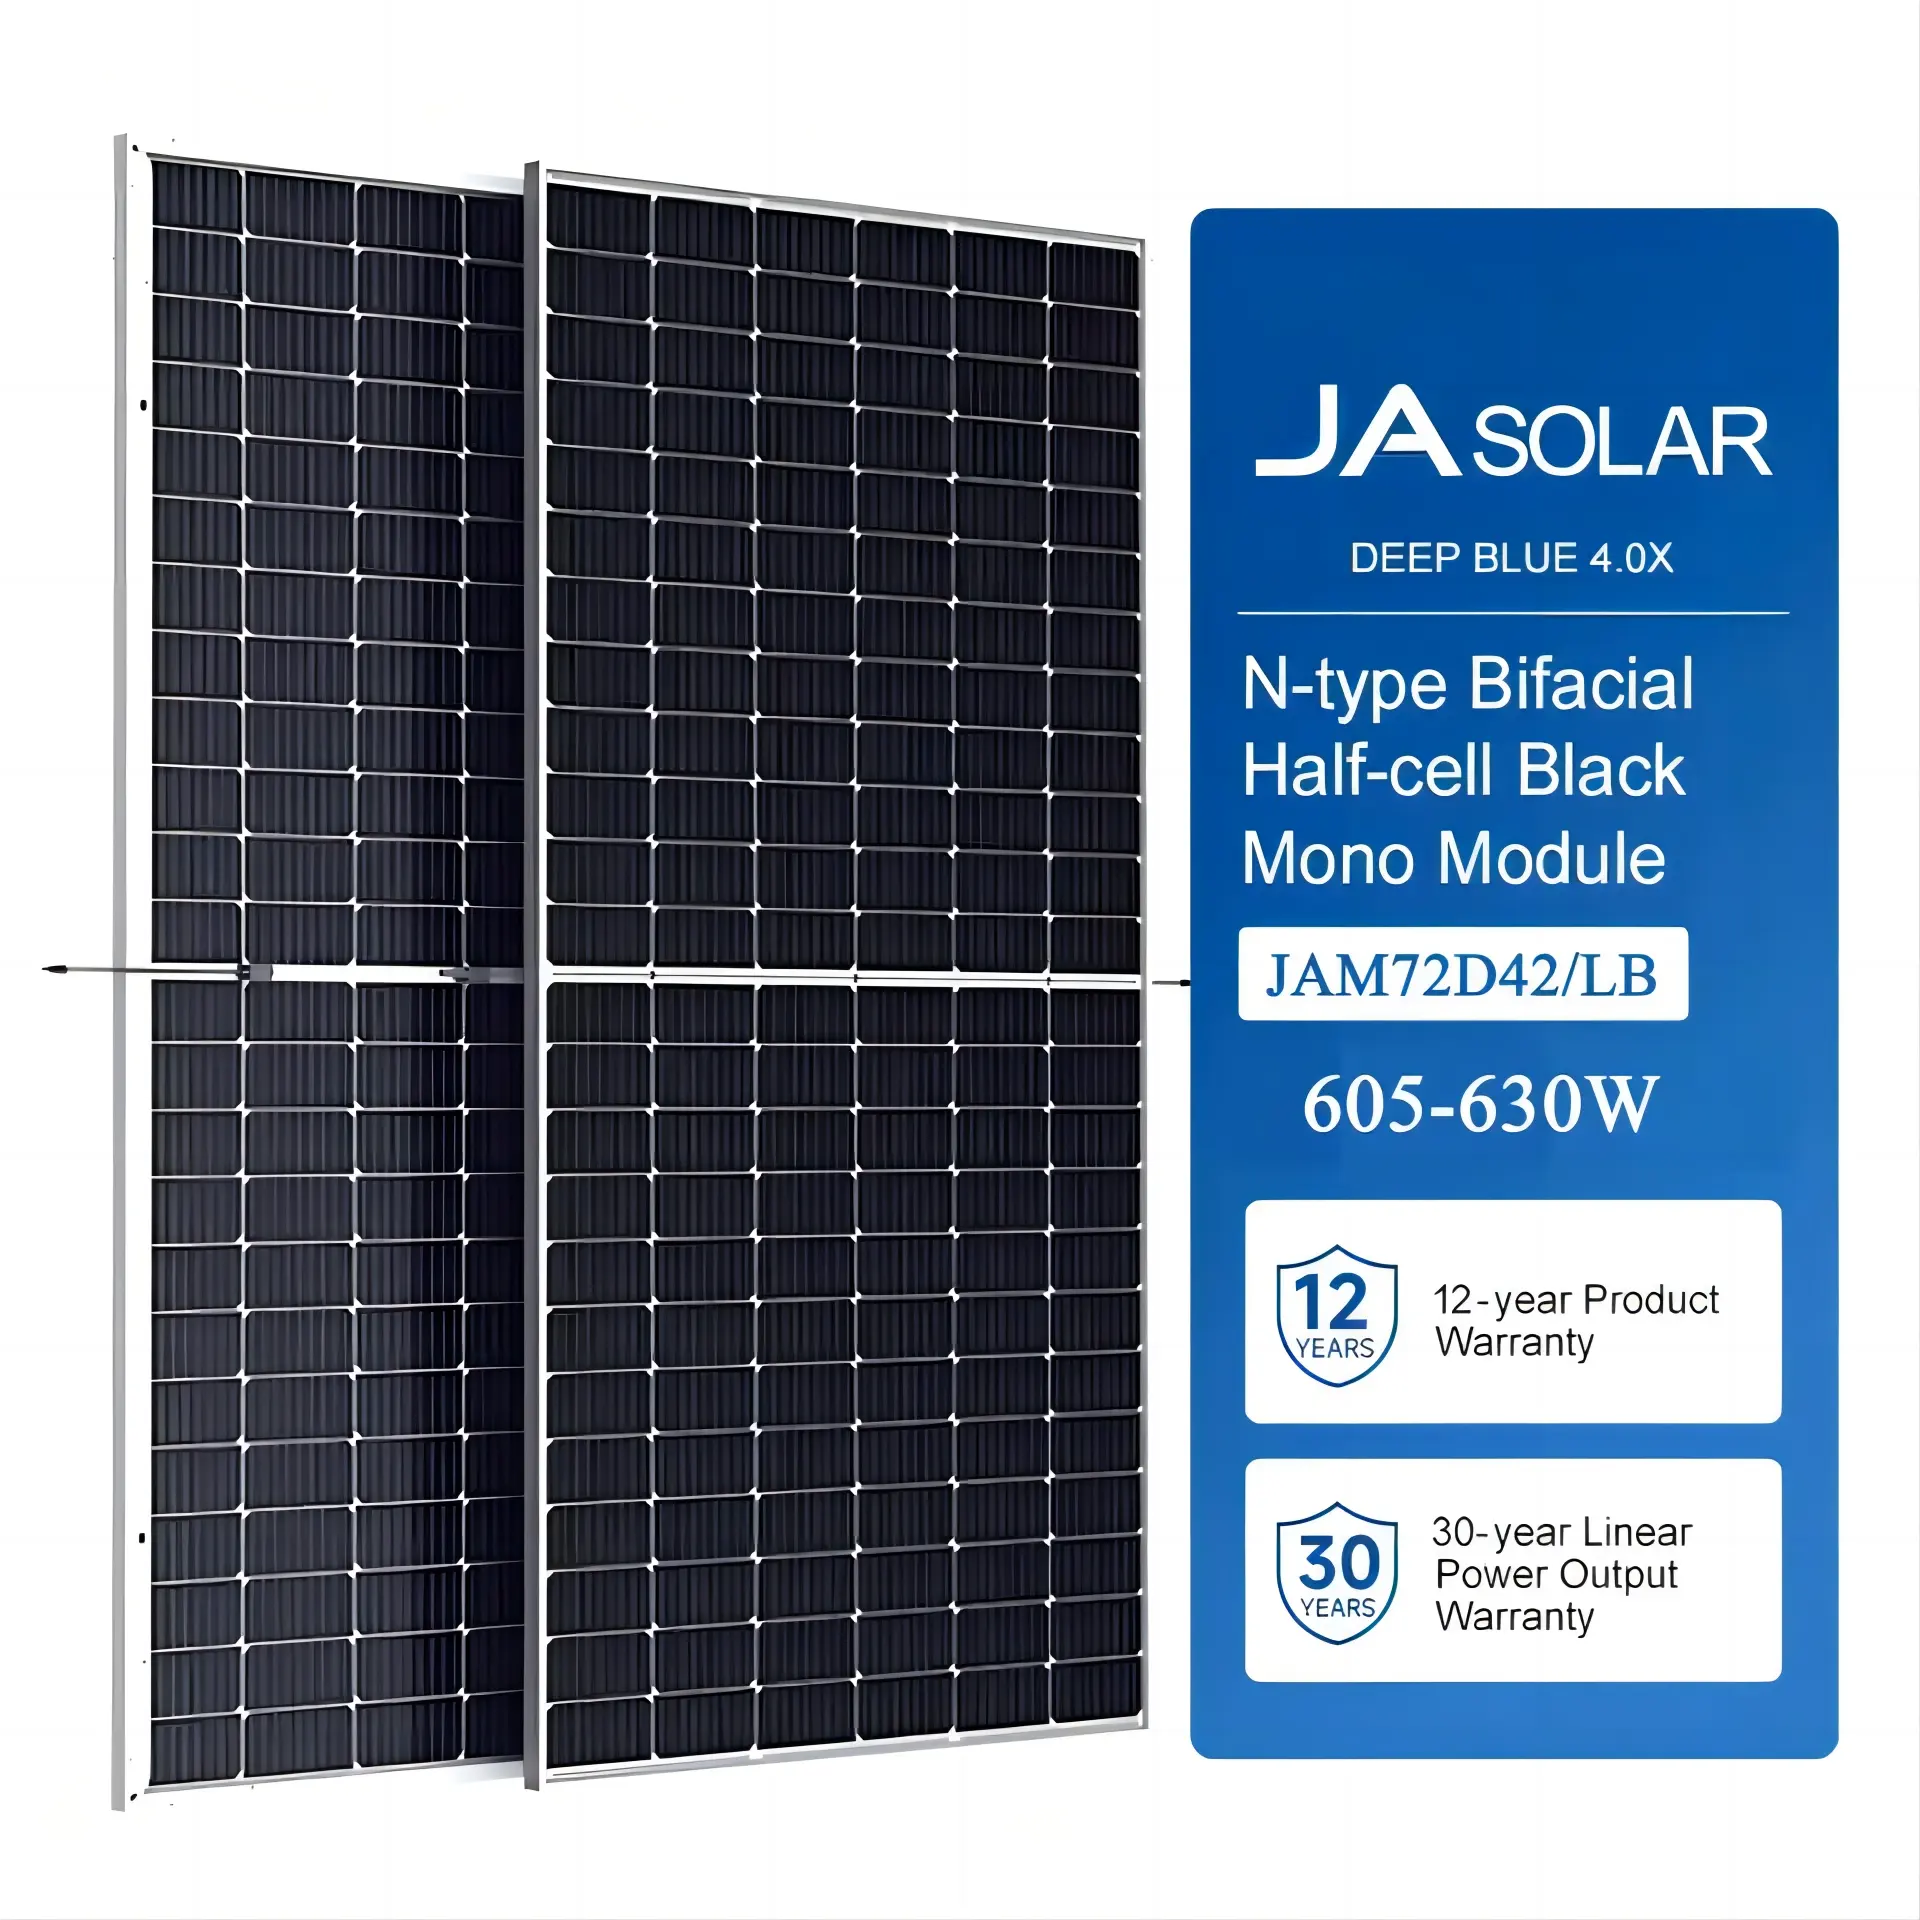 고효율 JA 태양 전지판 JAM72D42 LB 시리즈 n형 이중 유리 이안면 610W 615W 620W 625W 630W 635W 딥블루 4.0 시리즈